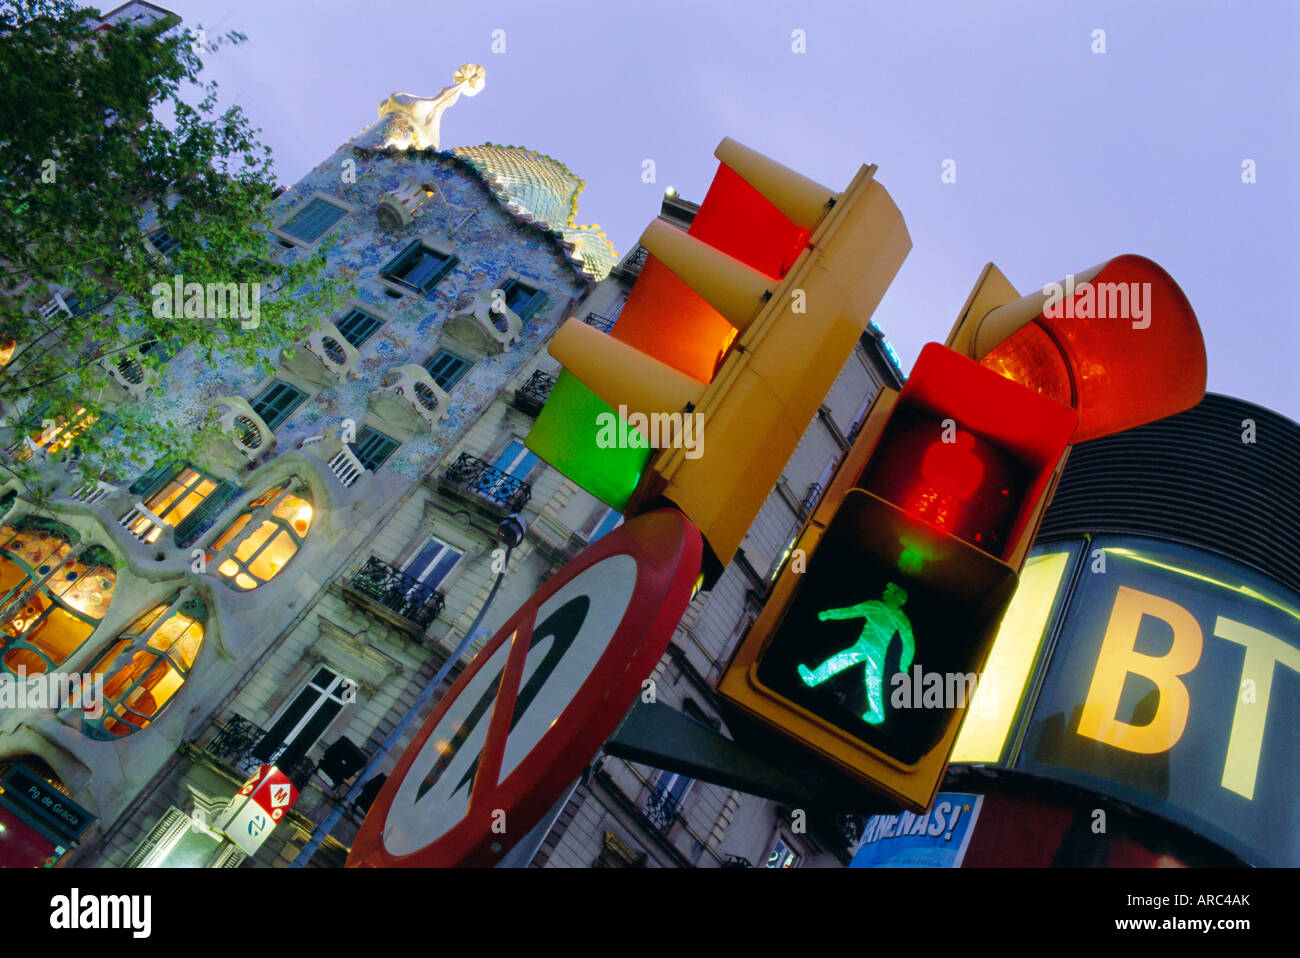 Casa Balli, Gaudi-Architektur und Straßenschilder, Barcelona, Spanien Stockfoto